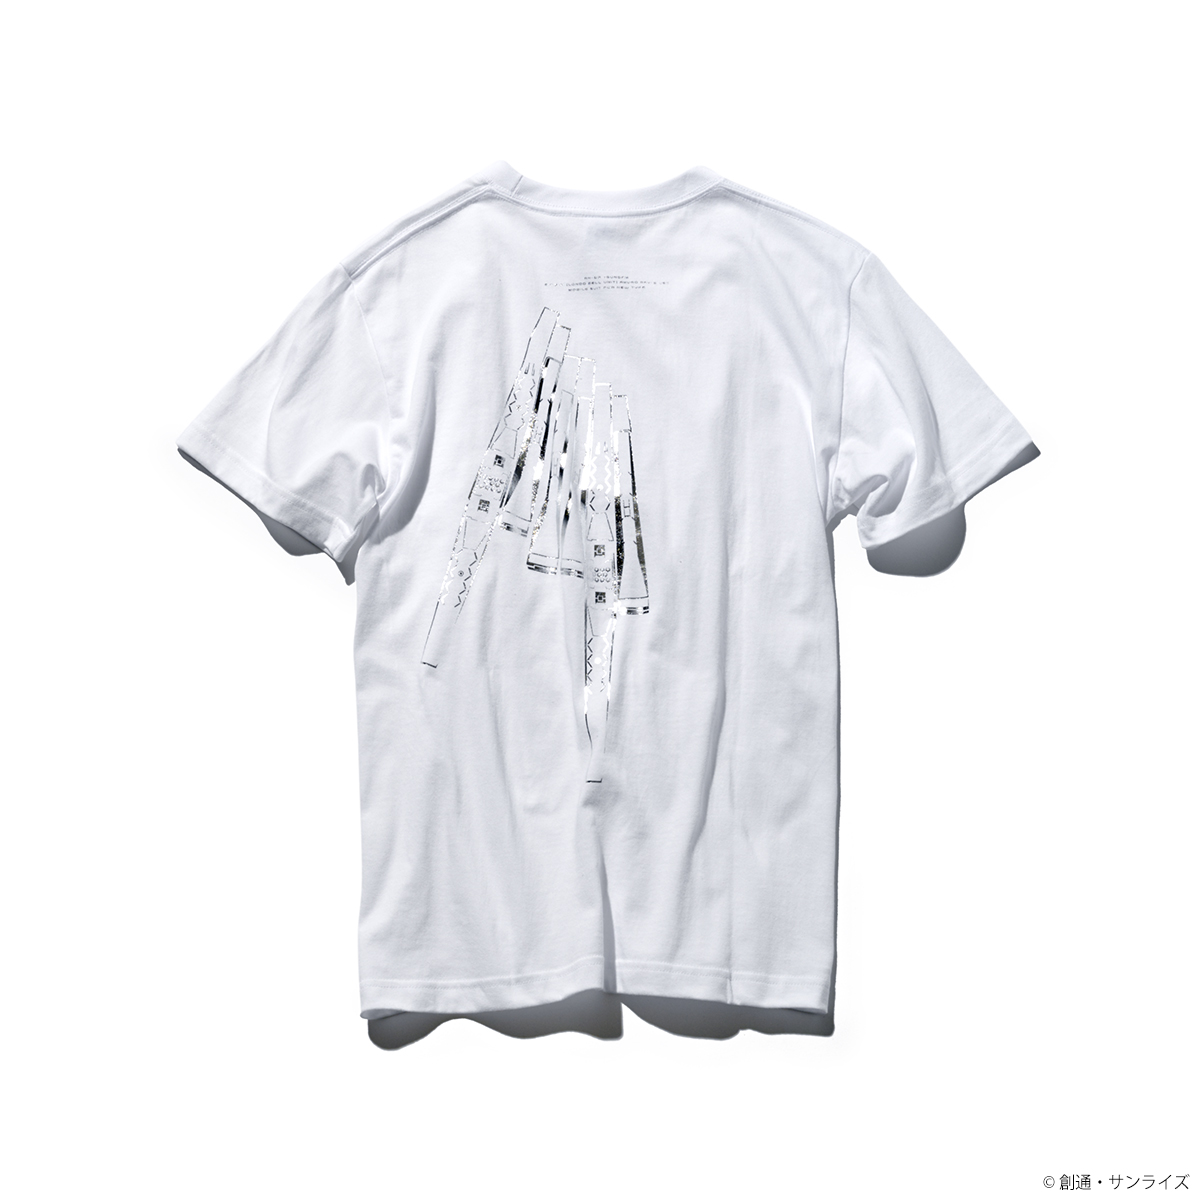 STRICT-G『機動戦士ガンダム 逆襲のシャア』箔プリントTシャツ  フィン・ファンネル柄